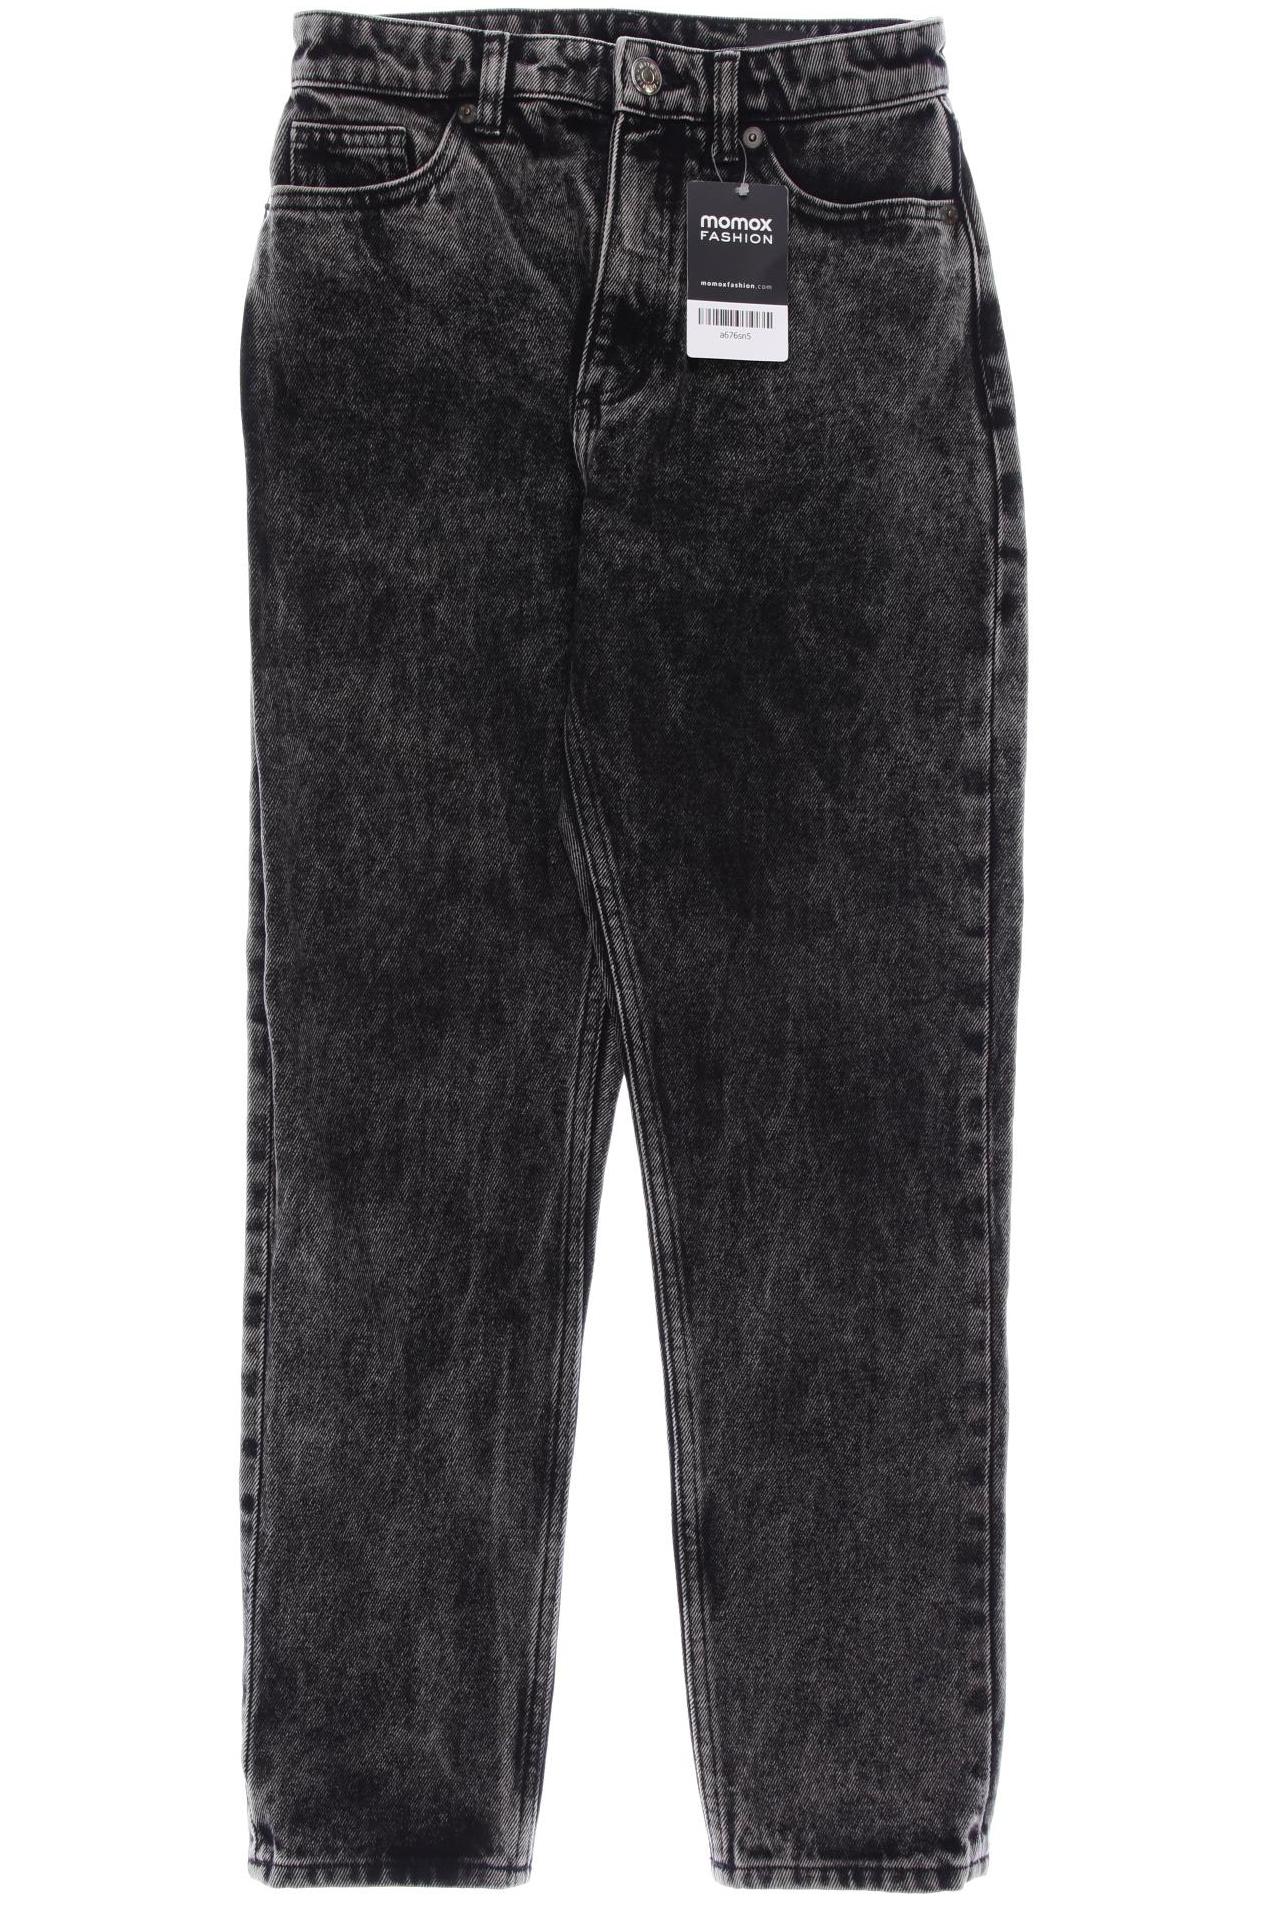 Monki Damen Jeans, schwarz, Gr. 34 von Monki